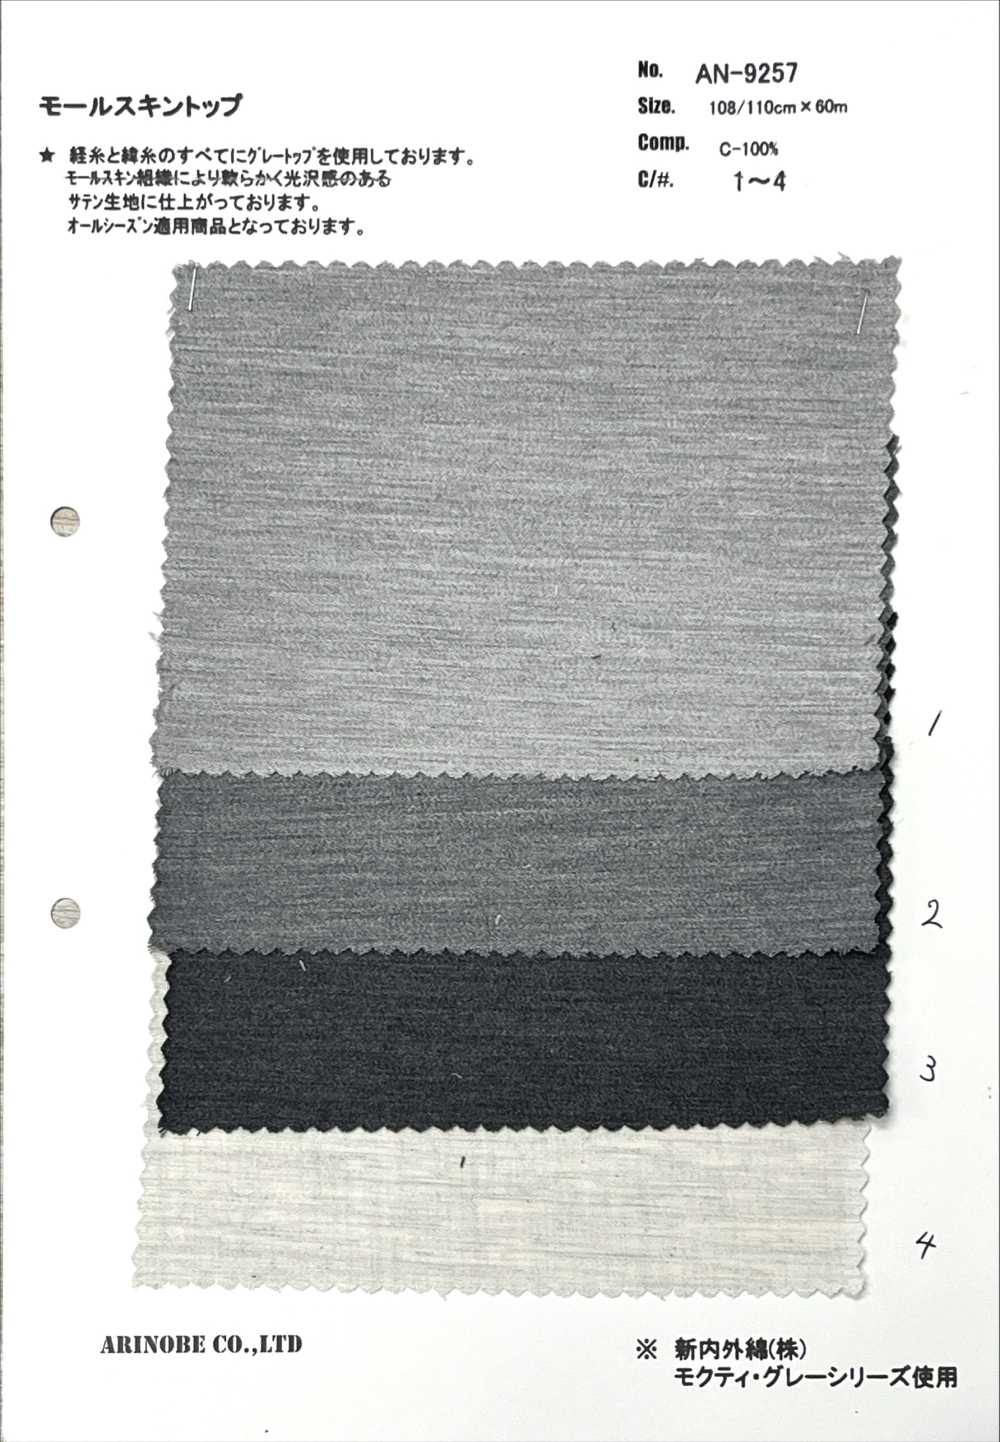 AN-9257 Moleskin-Oberfaden Verwendet[Textilgewebe] ARINOBE CO., LTD.